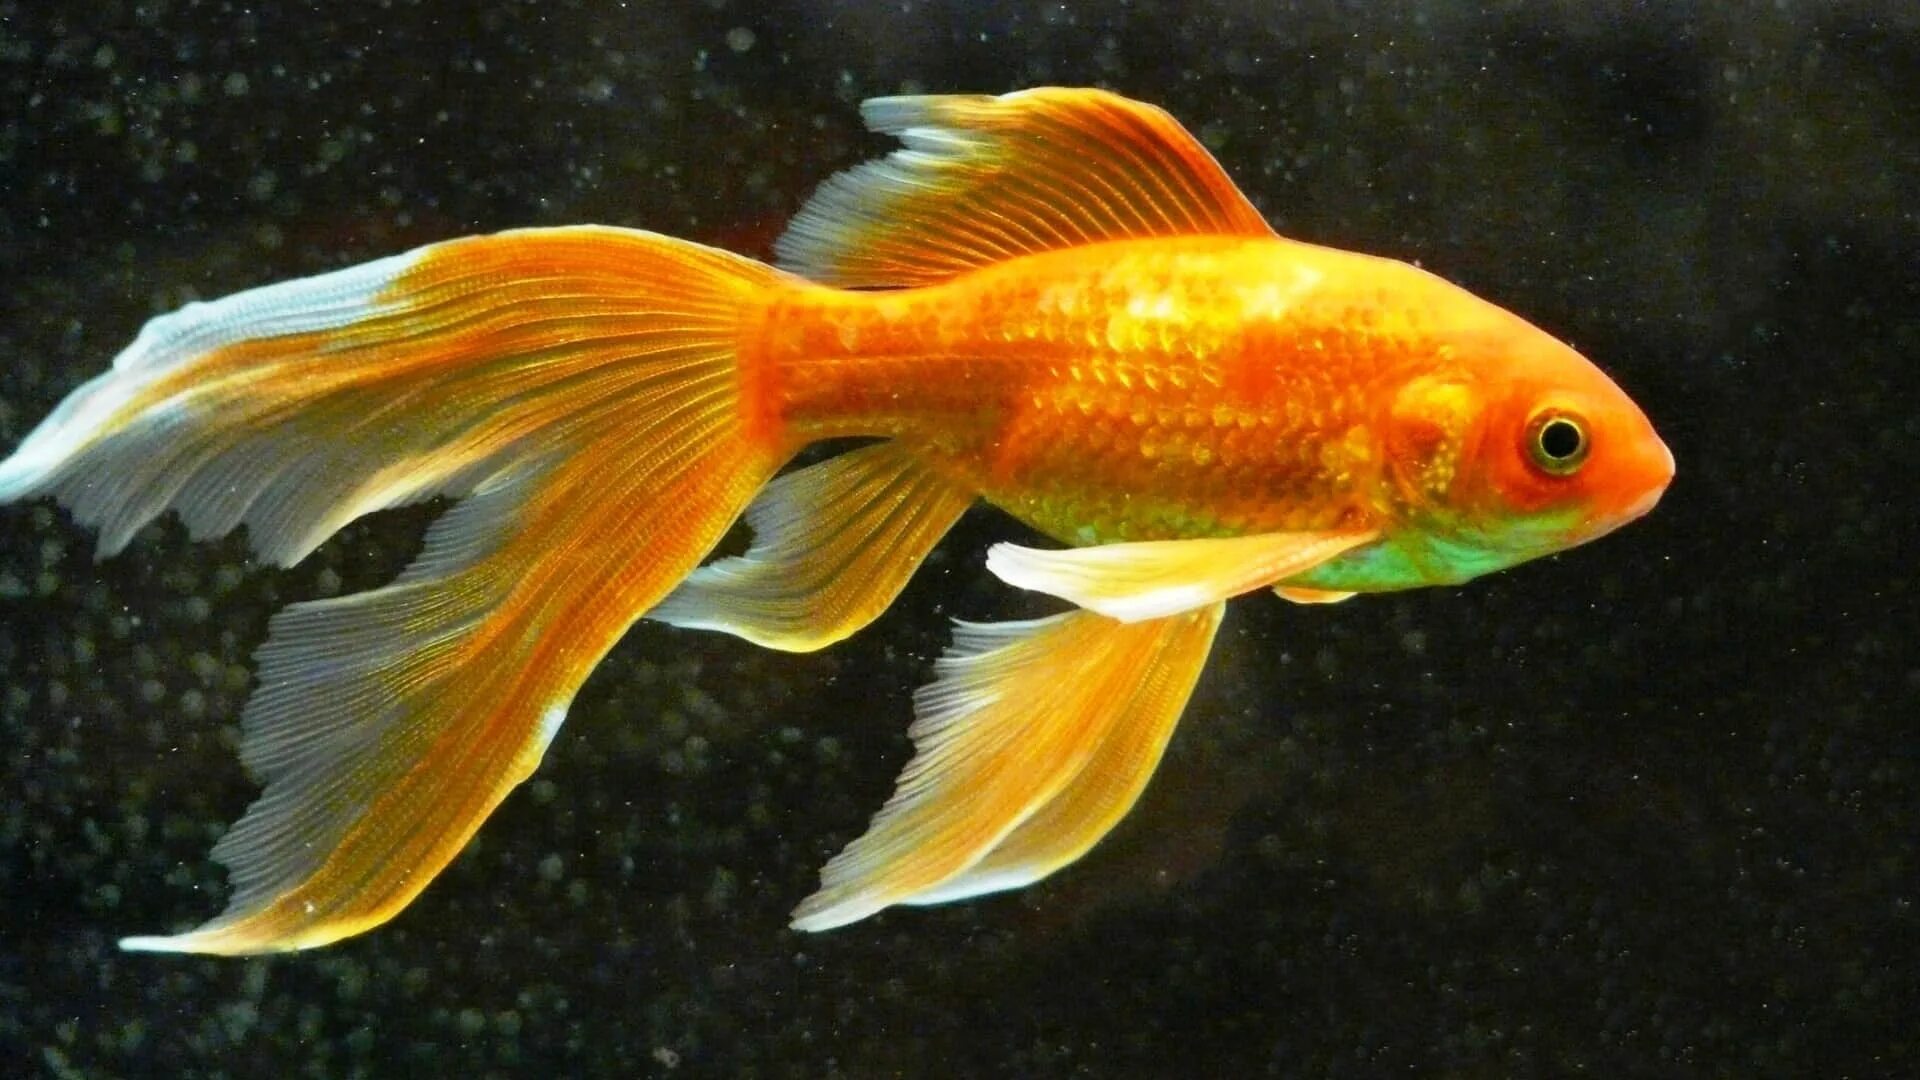 Аквариумная рыба золотая рыбка. Комета вуалехвост. Золотая рыбка вуалехвост. Золотая рыбка Комета вуалехвост. Золотые аквариумные рыбки Комета.